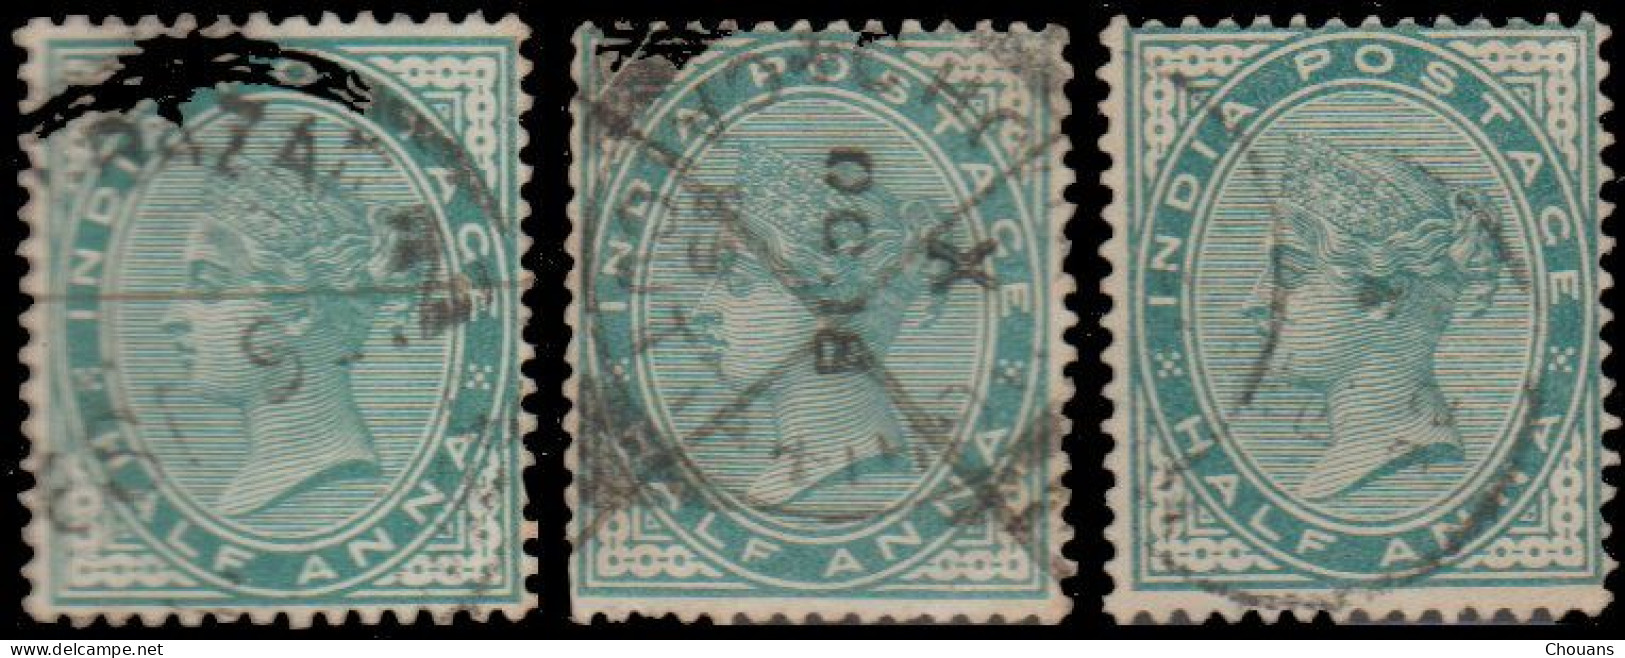 Inde Anglaise 1882. ~ YT 33 (par 14) - ½ A. Victoria - 1882-1901 Empire